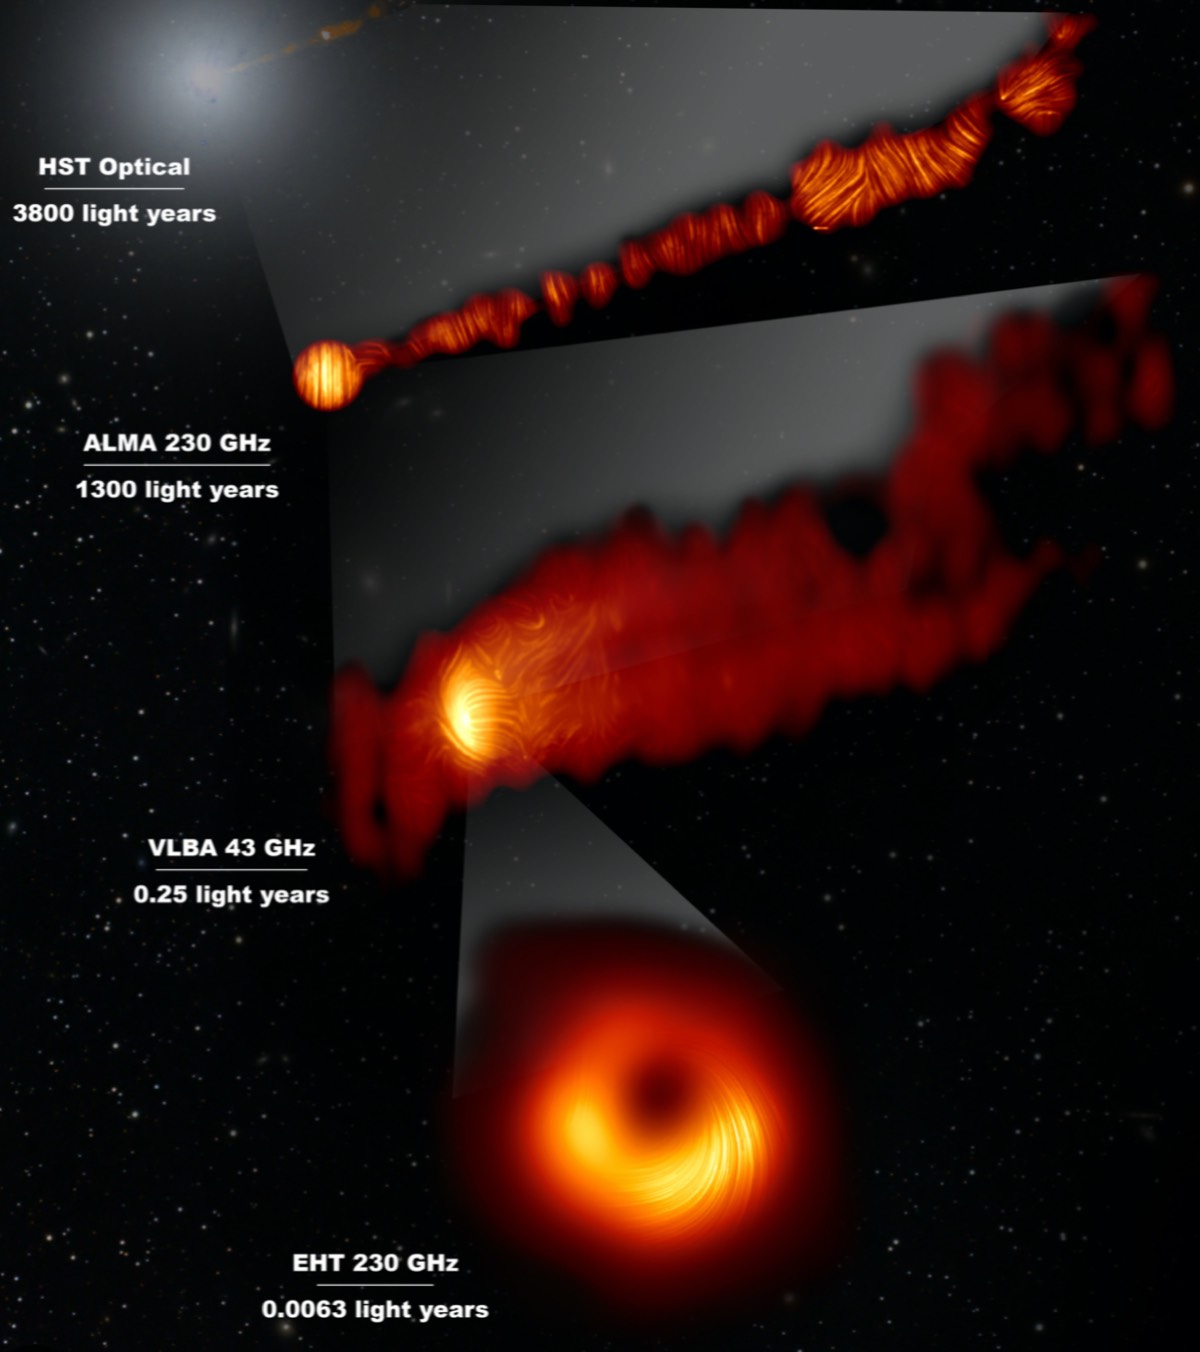 event horizon telescope sagittarius a disprove einstein